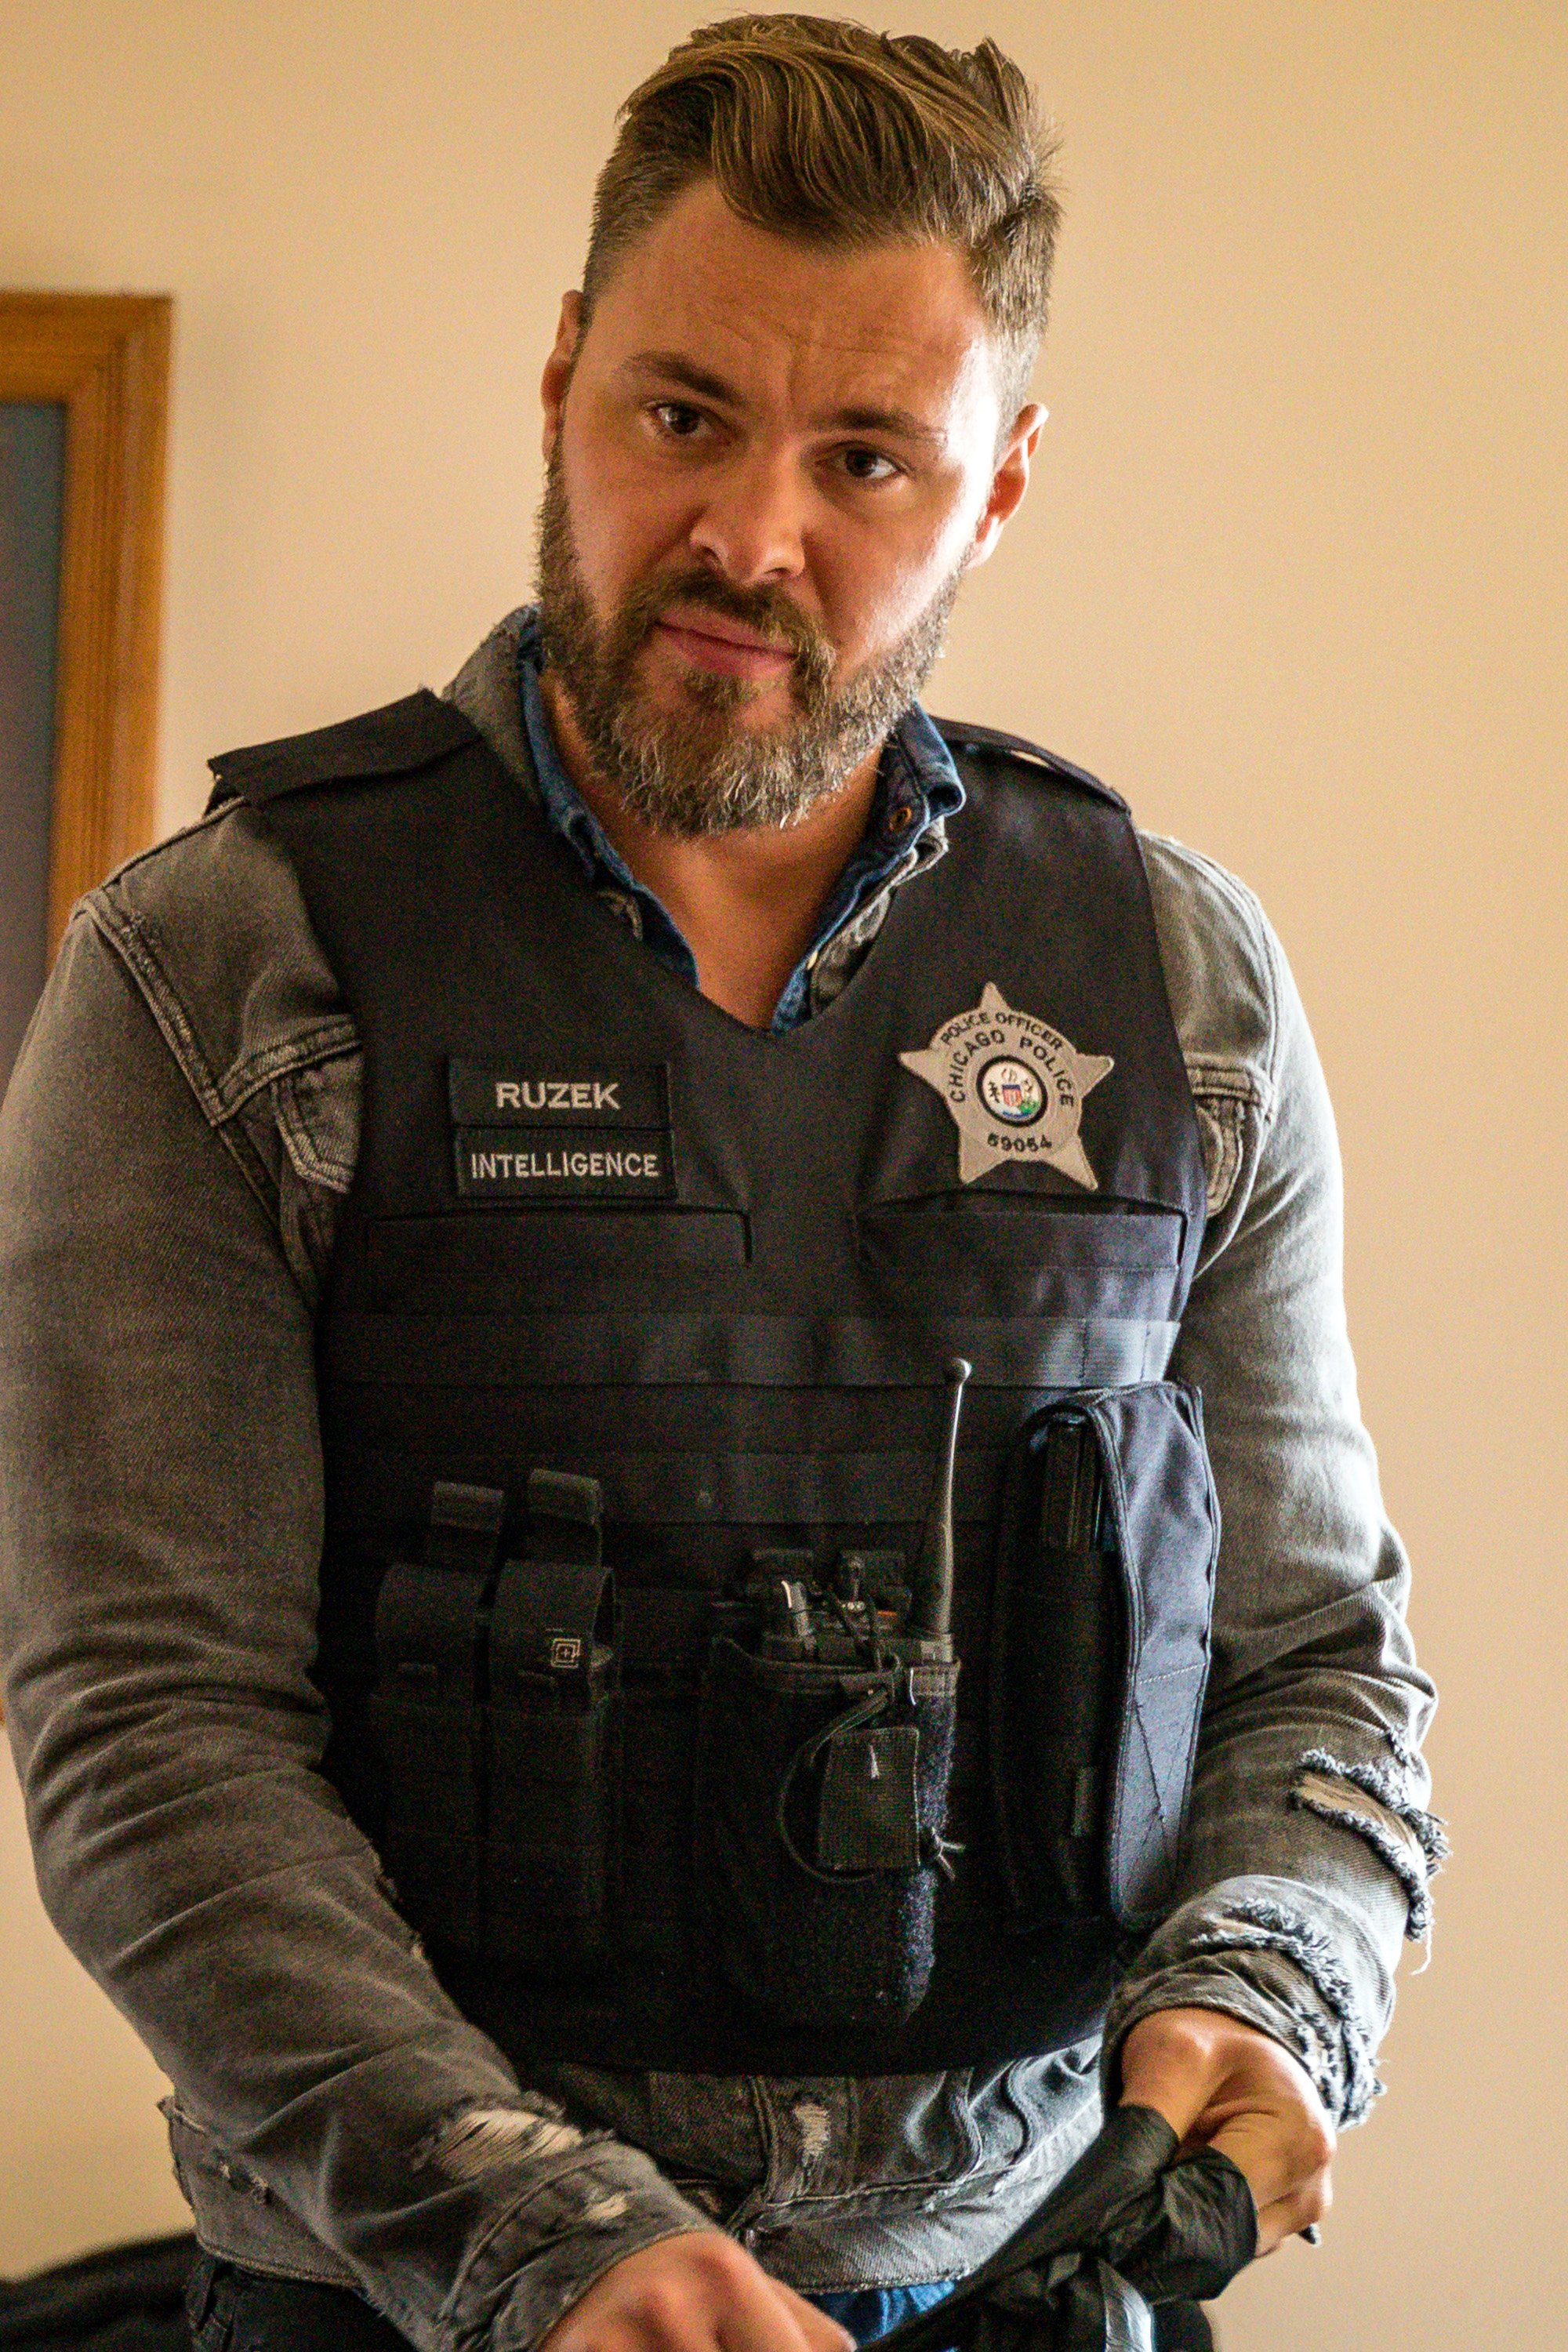 Patrick John Flueger as Officer Adam Ruzek on the "Chicago P.D." set on September 3, 2019 | Source: Getty Images